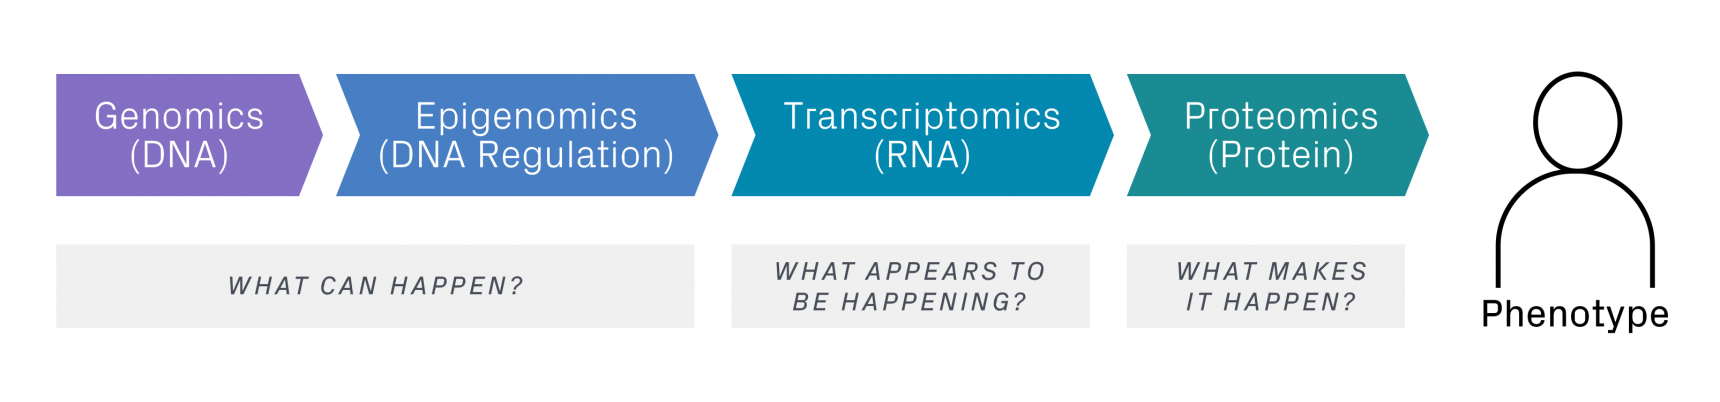 Image of Multiomics Approach: Genomics (DNA), Epigenomics (DNA Regulation), Transcriptomics (RNA), and Proteomics (Protein)